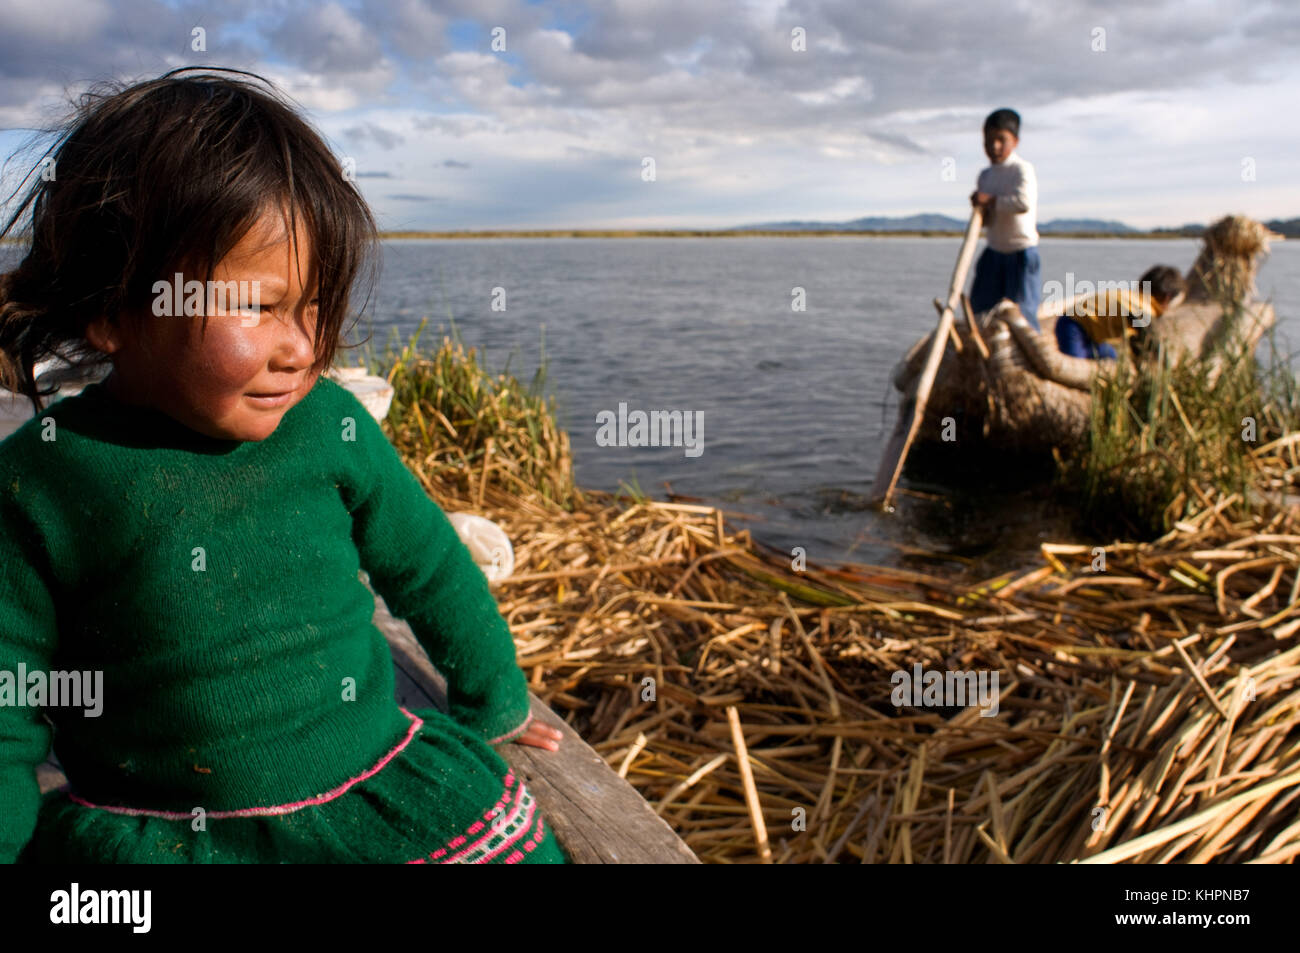 L'île uros, le lac Titicaca, au Pérou, en Amérique du Sud. Les enfants de naviguer dans un bateau sur le lac Titicaca totora près d'une île habitée par des Uros. Banque D'Images